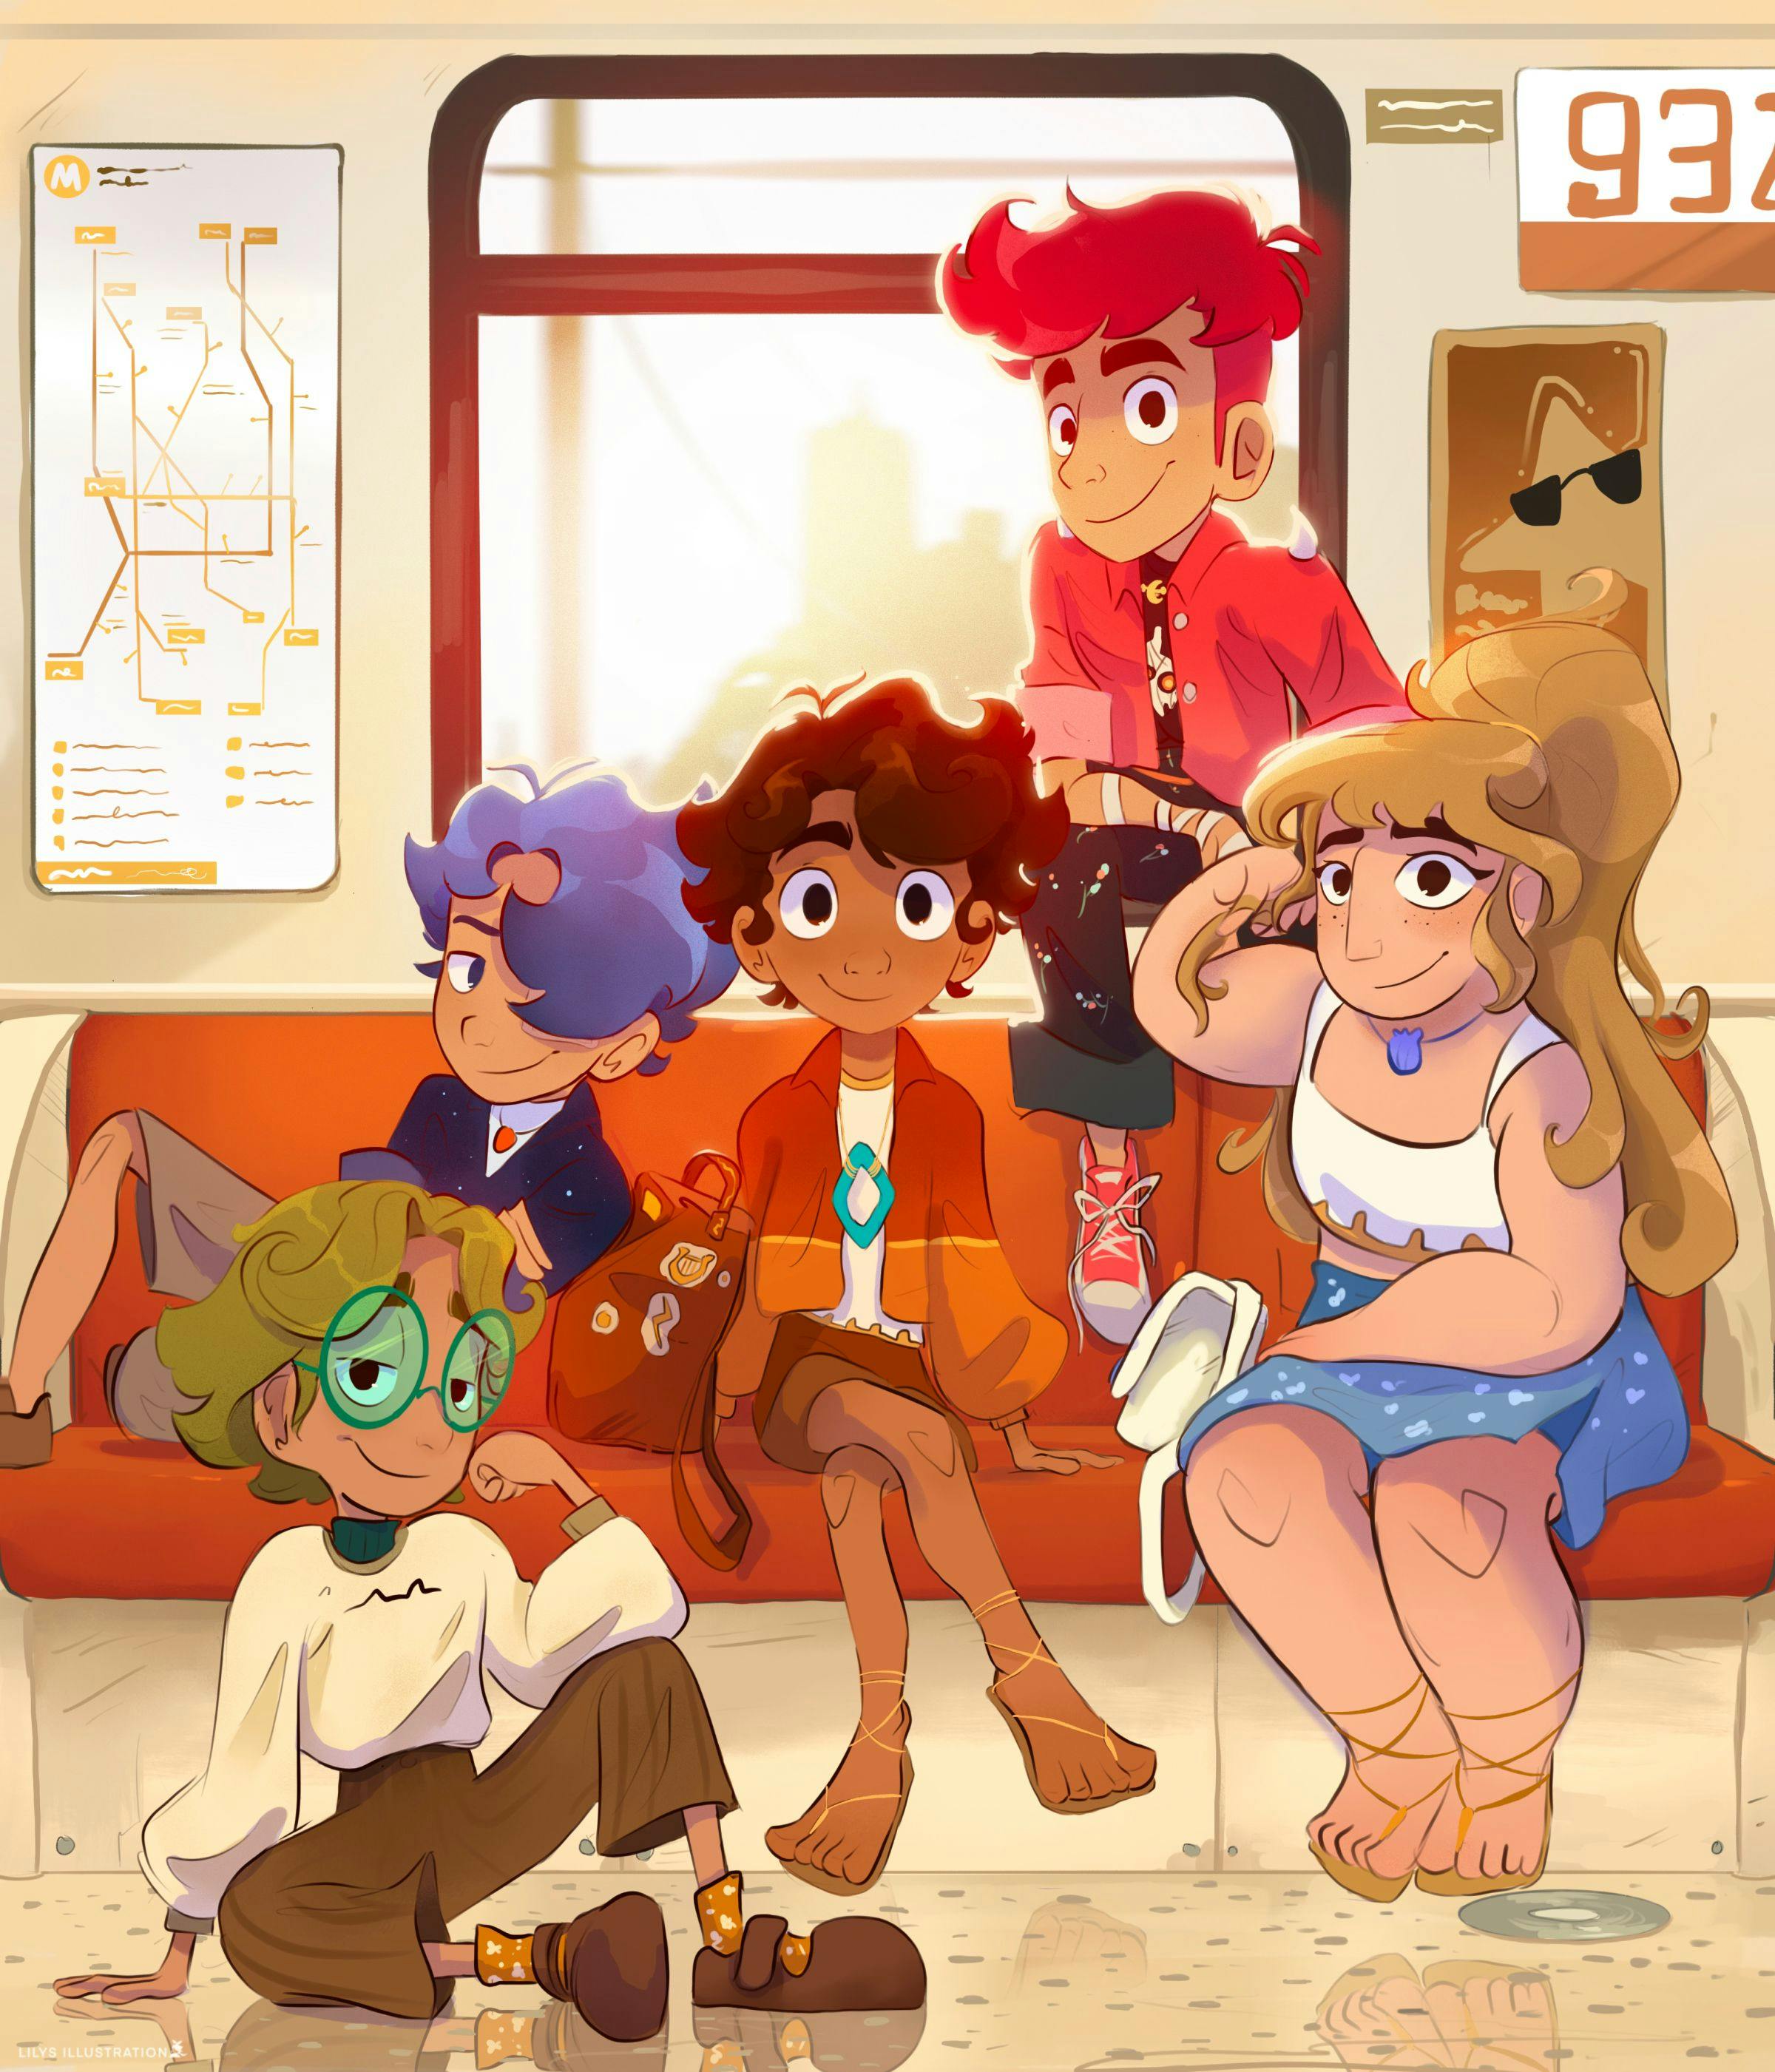 Children on a subway